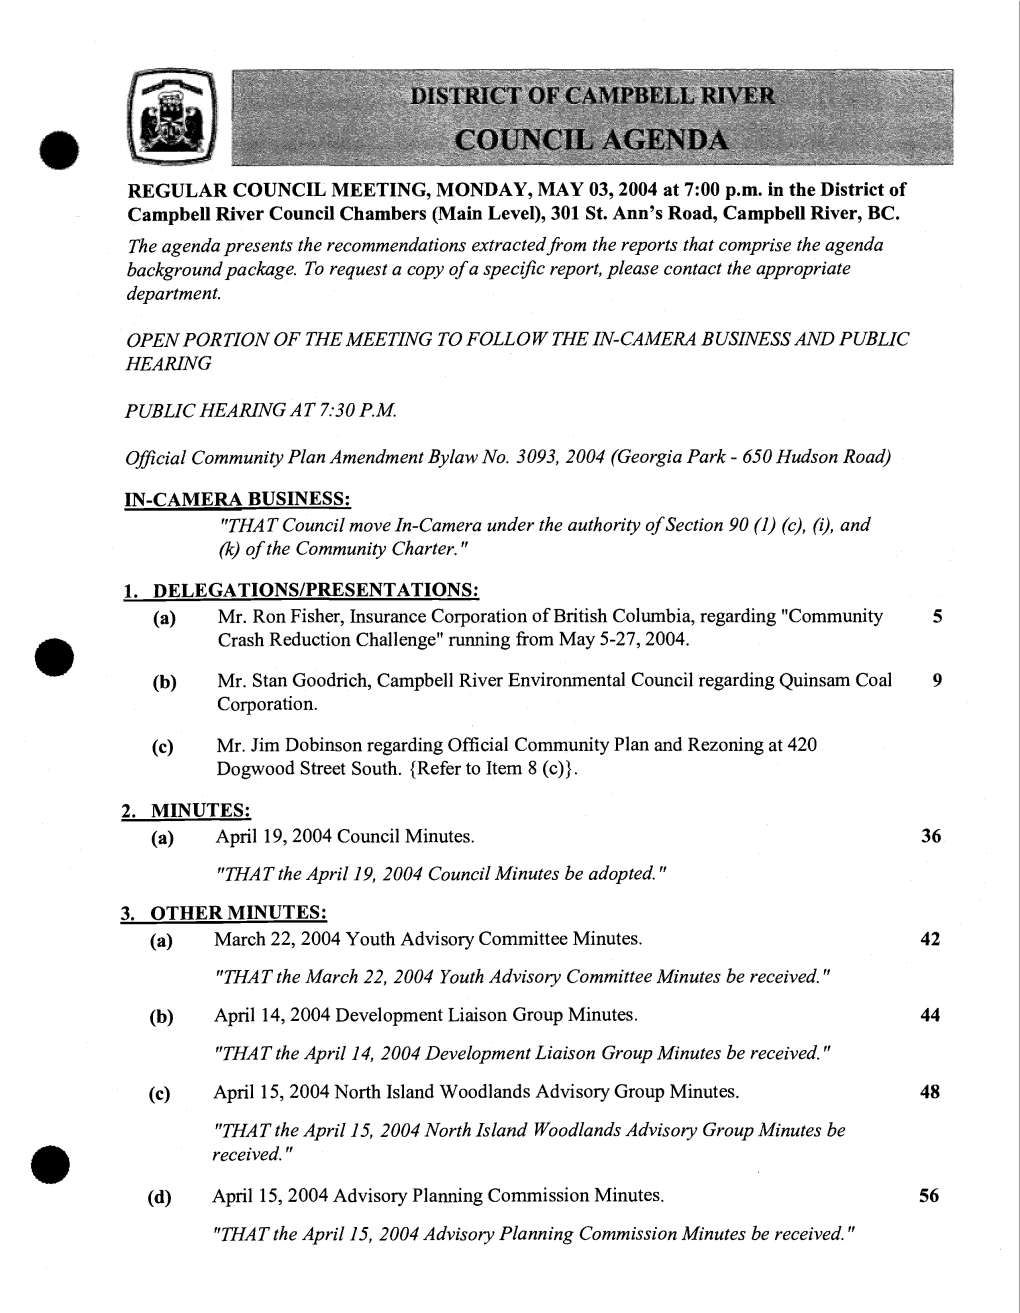 2. MINUTES: (A) April 19, 2004 Council Minutes